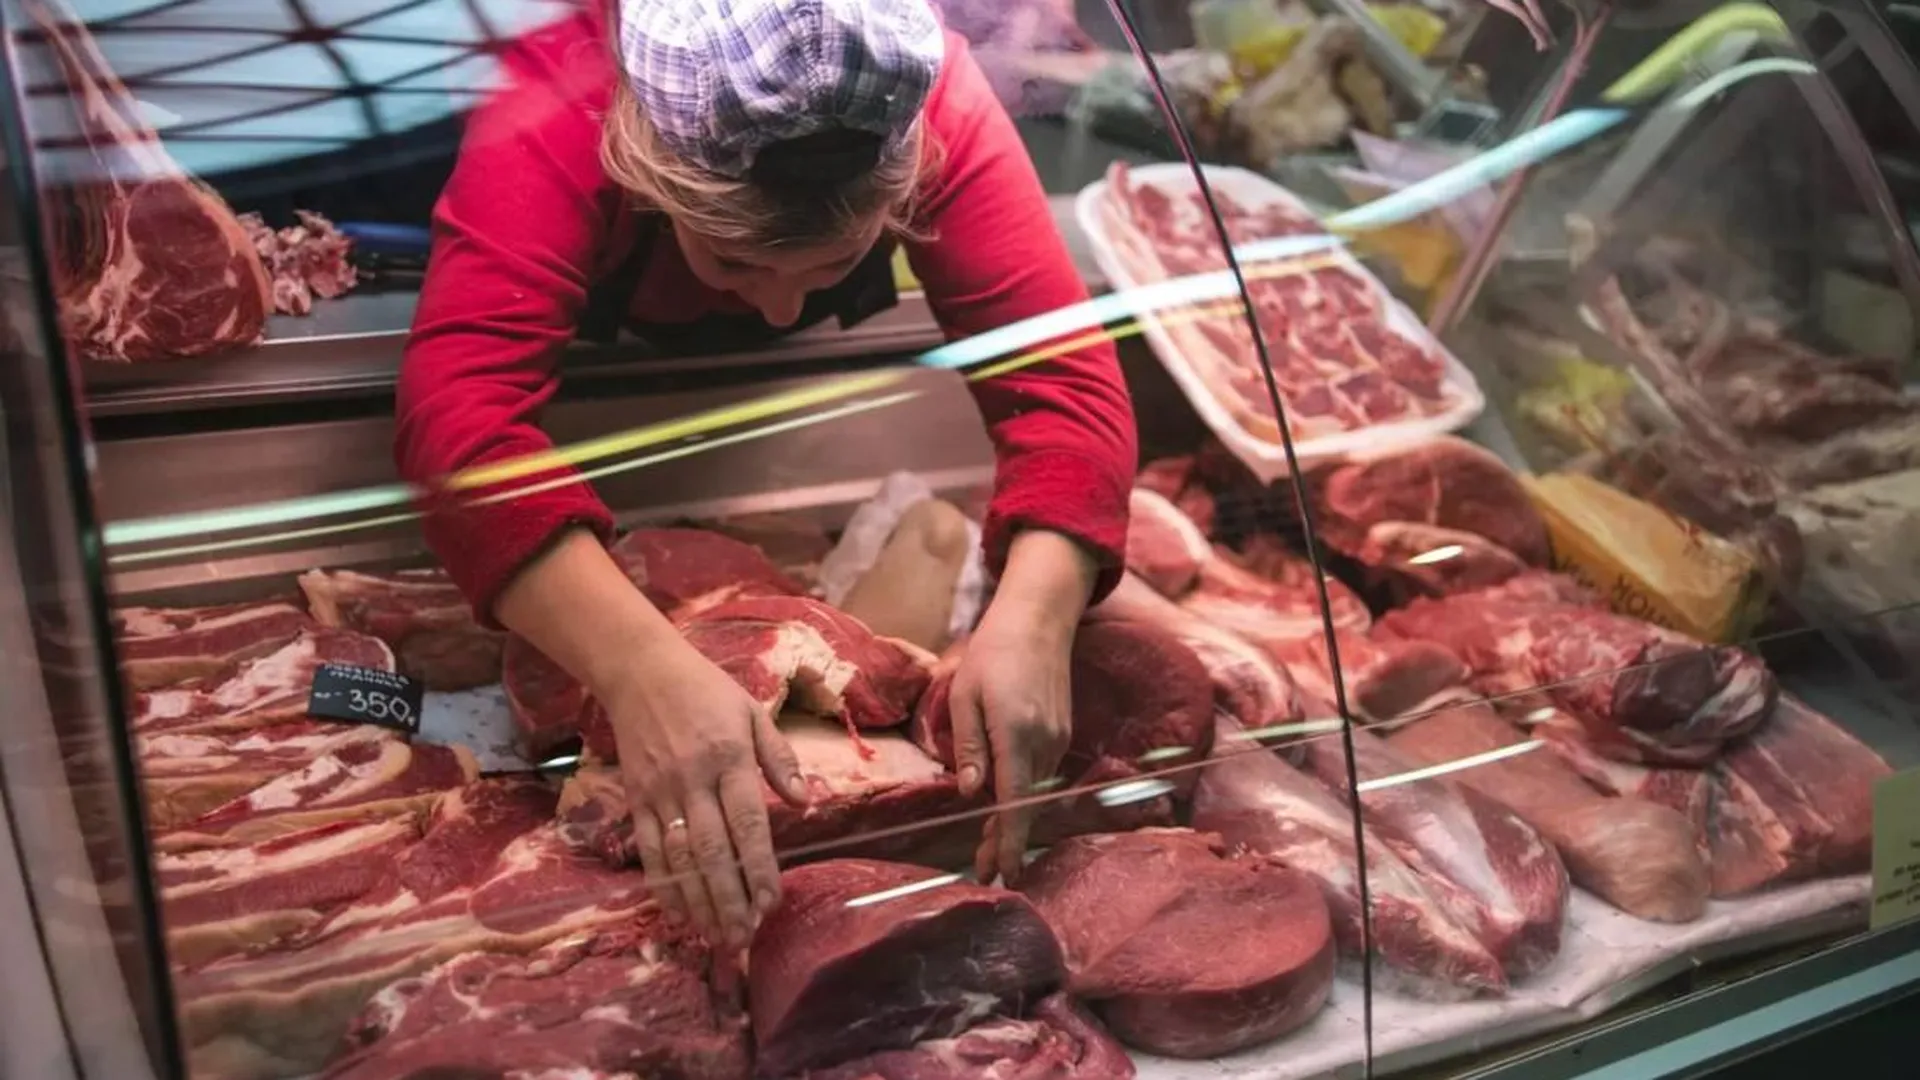 Полуголый мужчина разгромил мясной магазин в Екатеринбурге